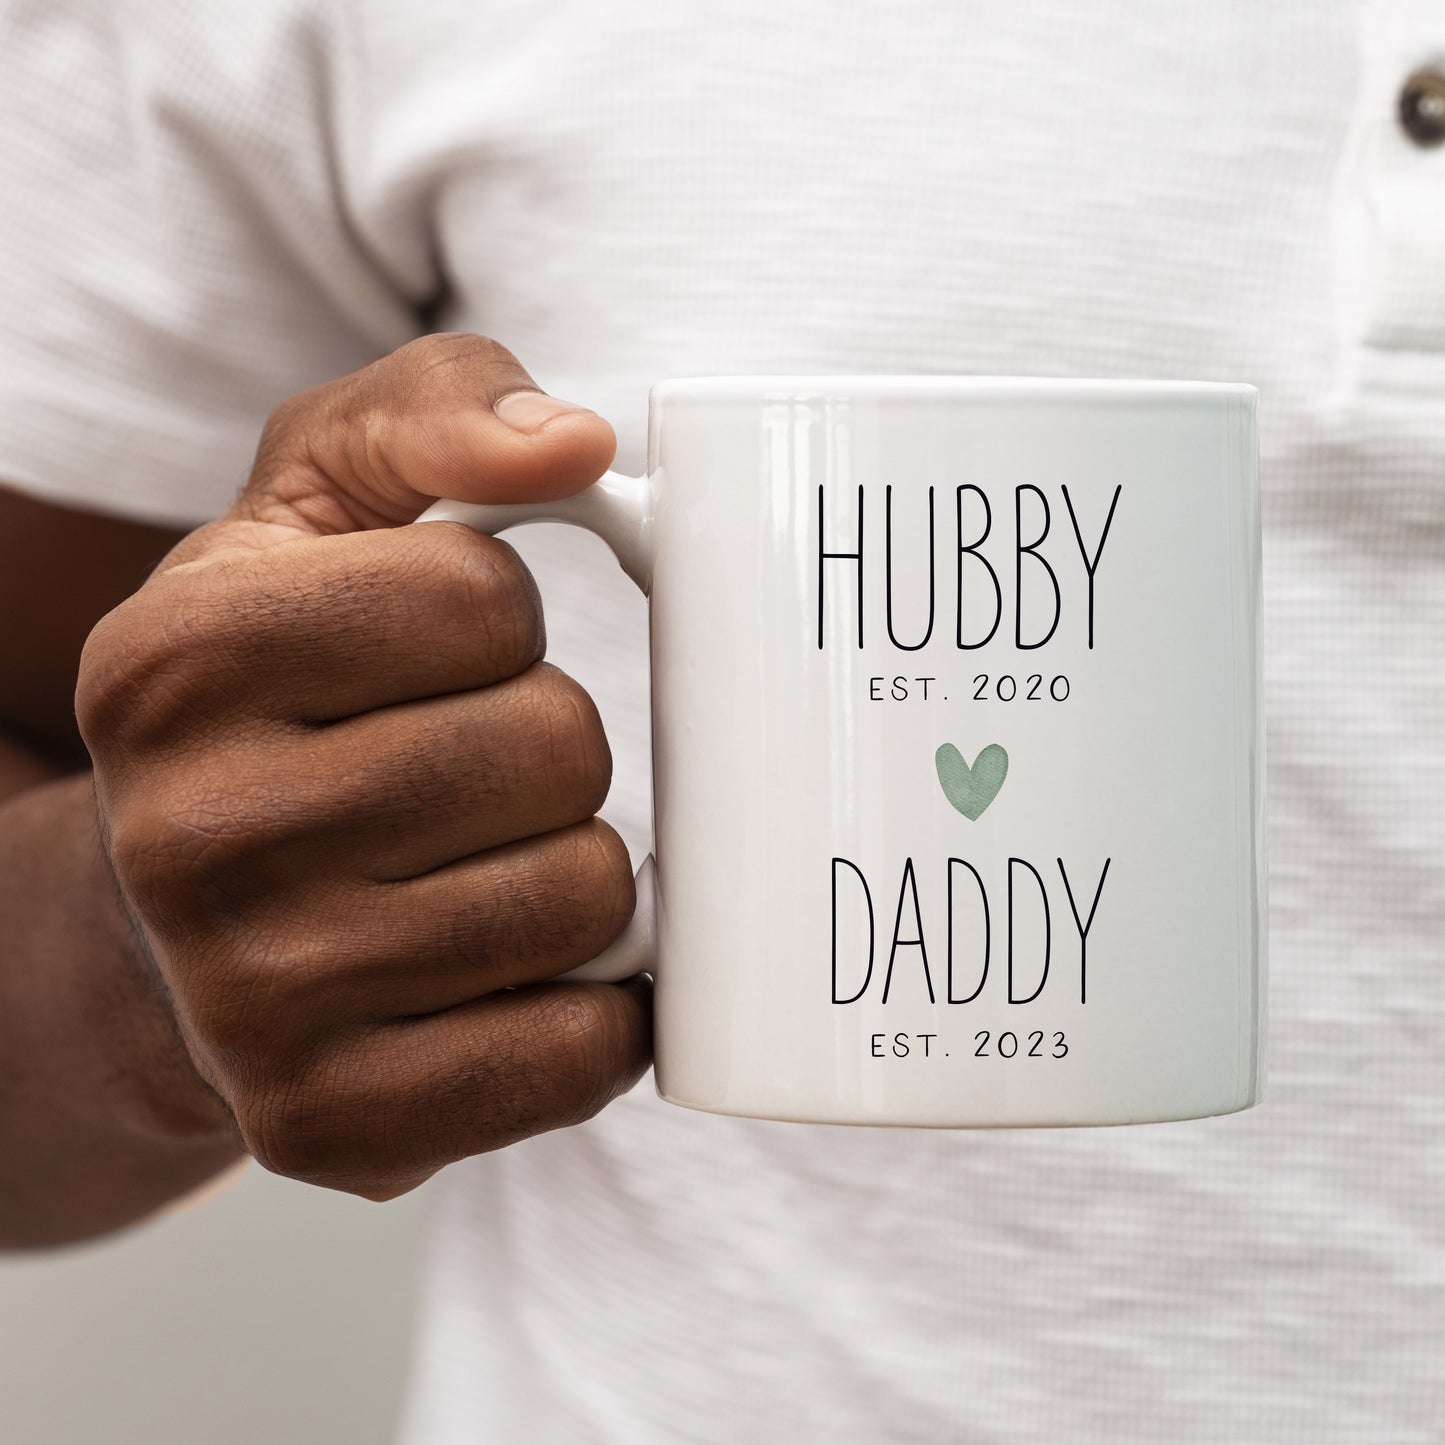 Hubby Daddy Ceramic Custom Mug - add dates. Gift for a new Dad